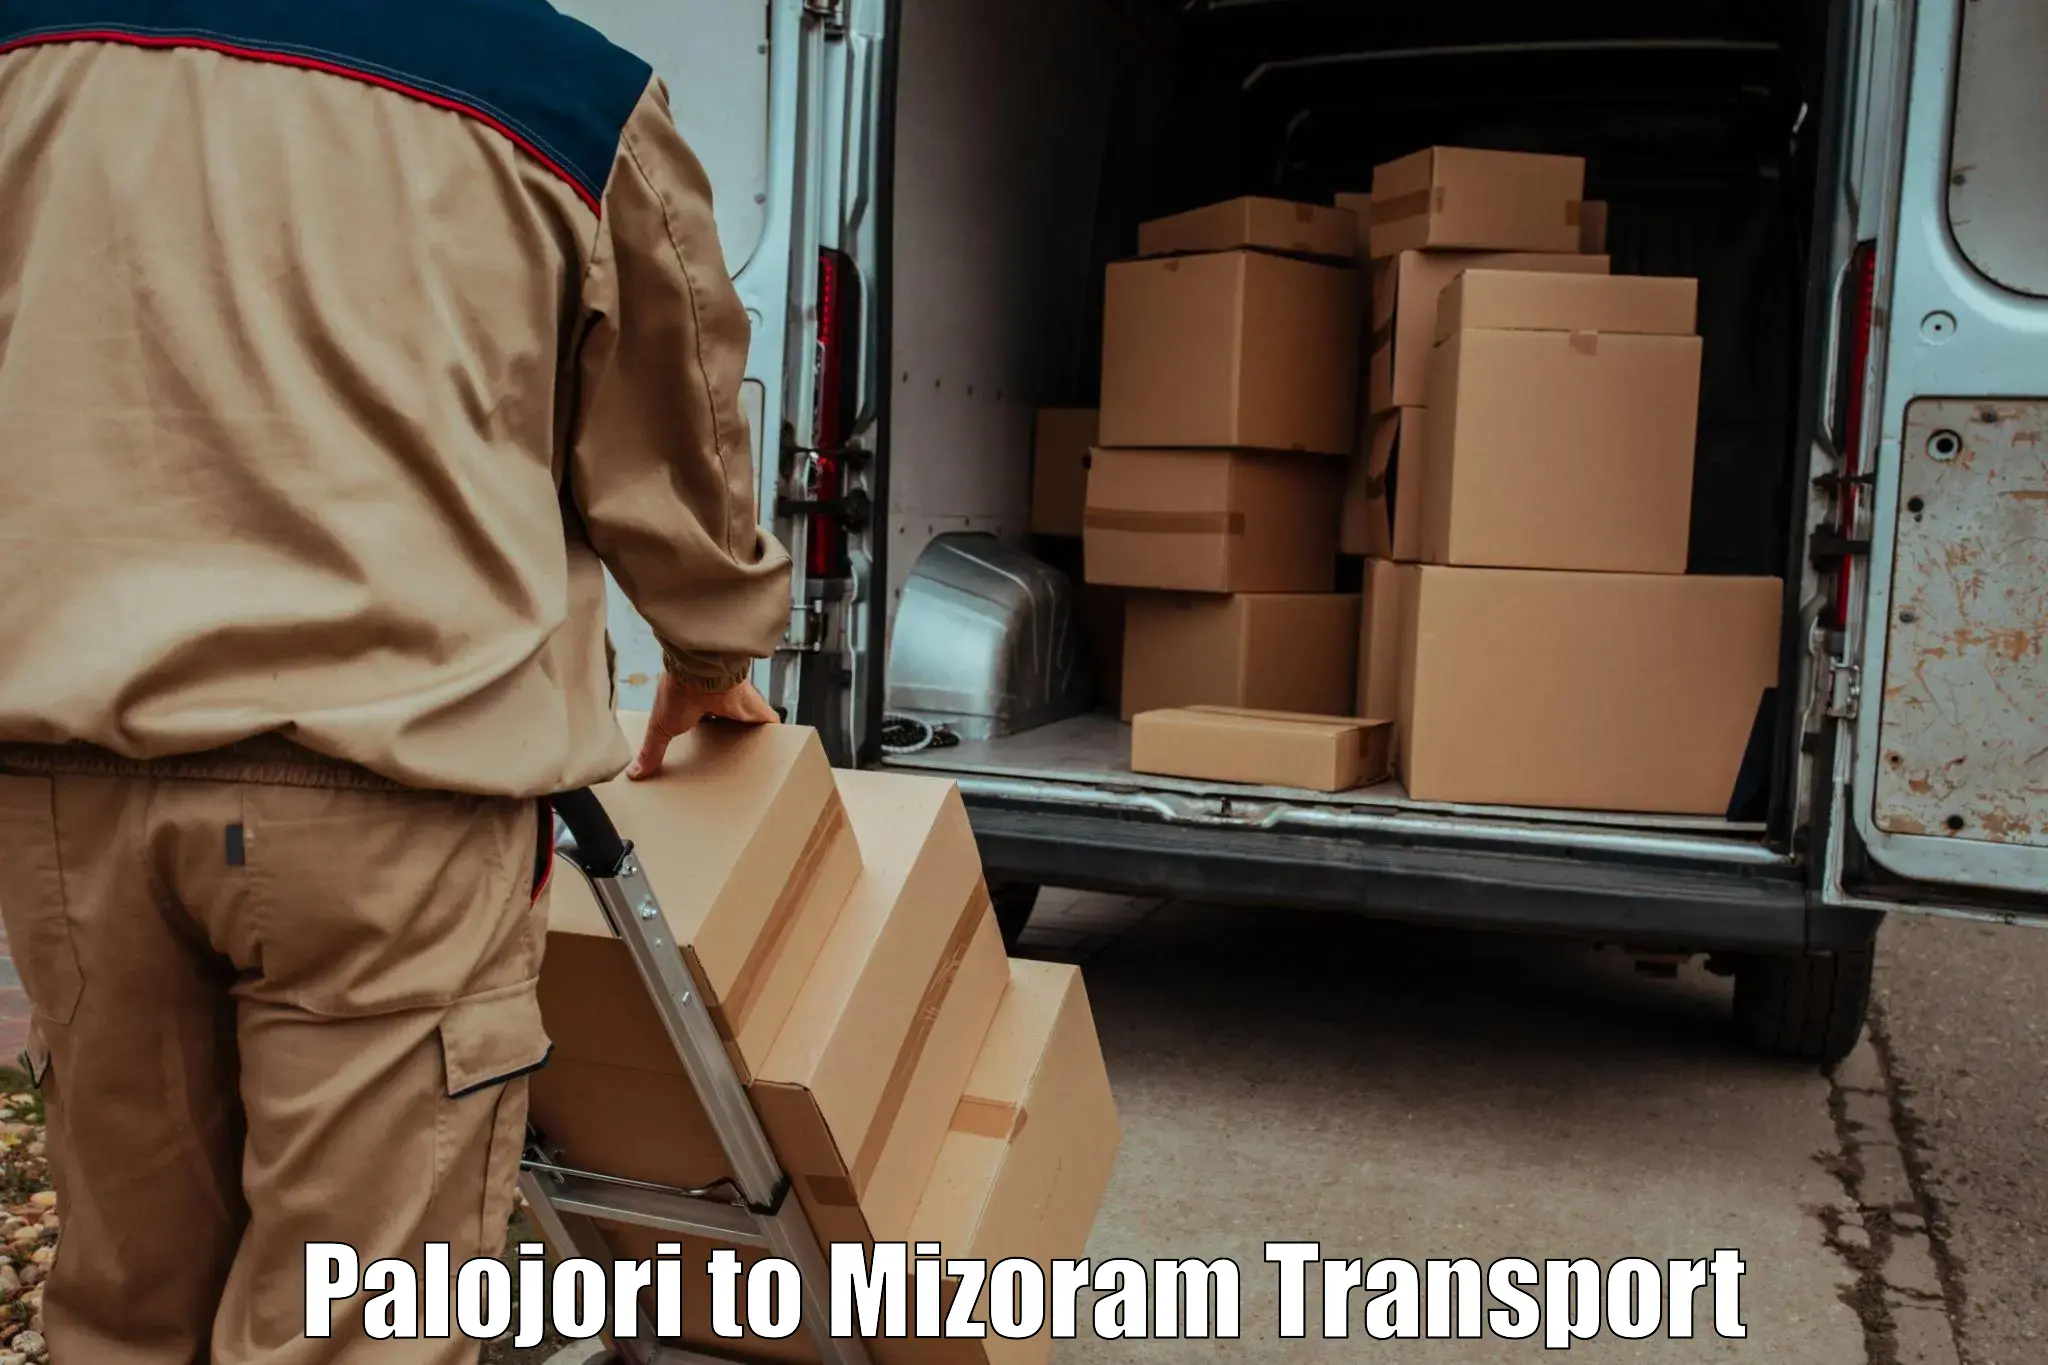 Part load transport service in India Palojori to NIT Aizawl